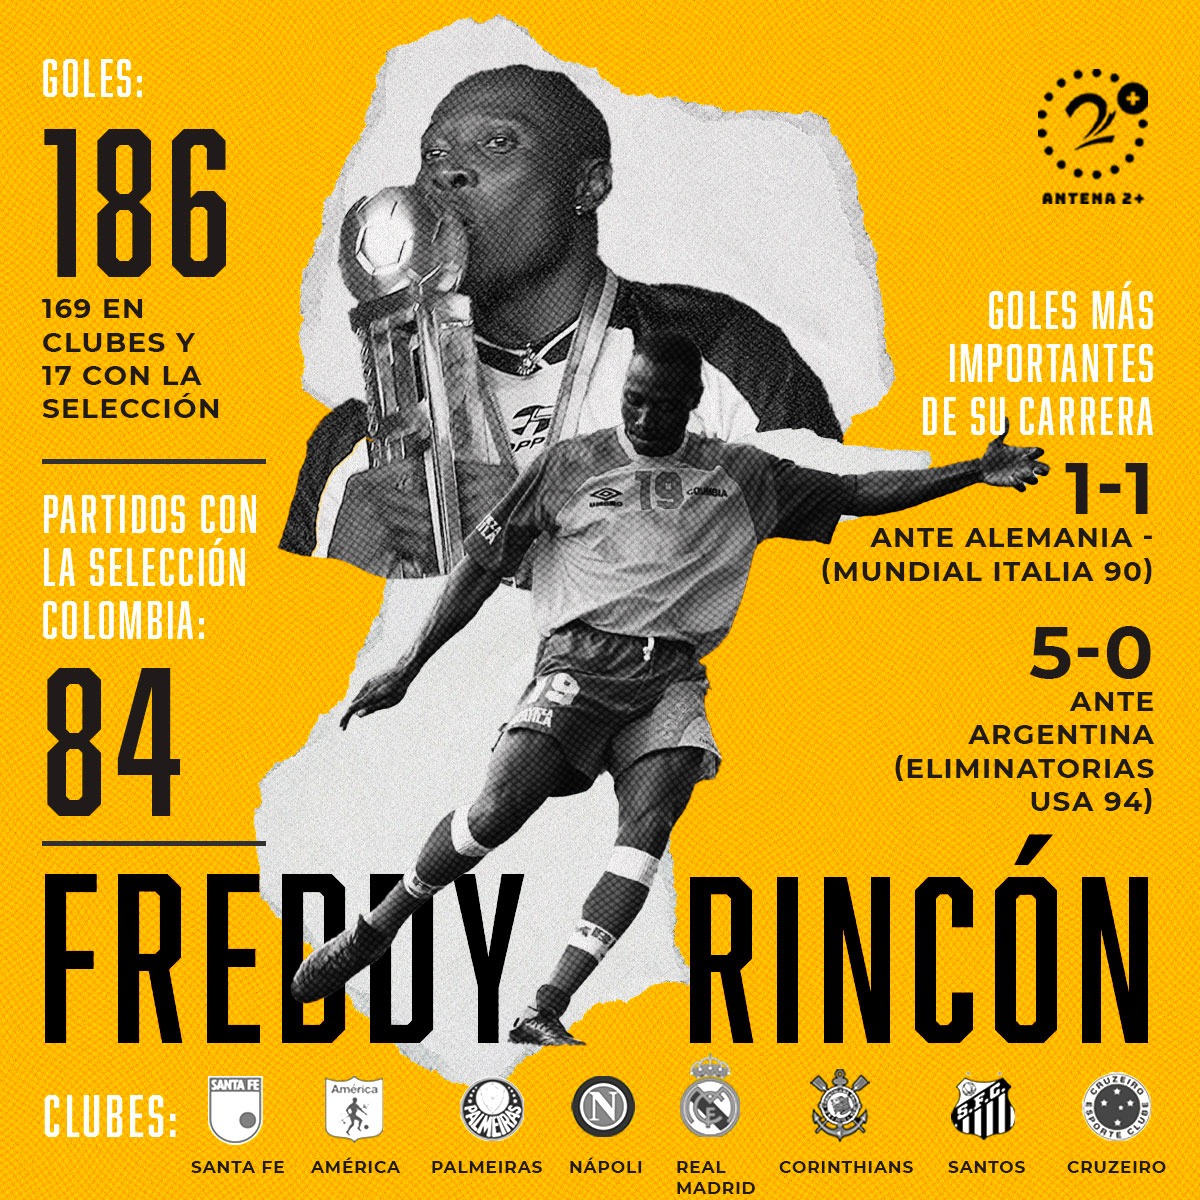 Freddy Rincón y sus números como futbolista